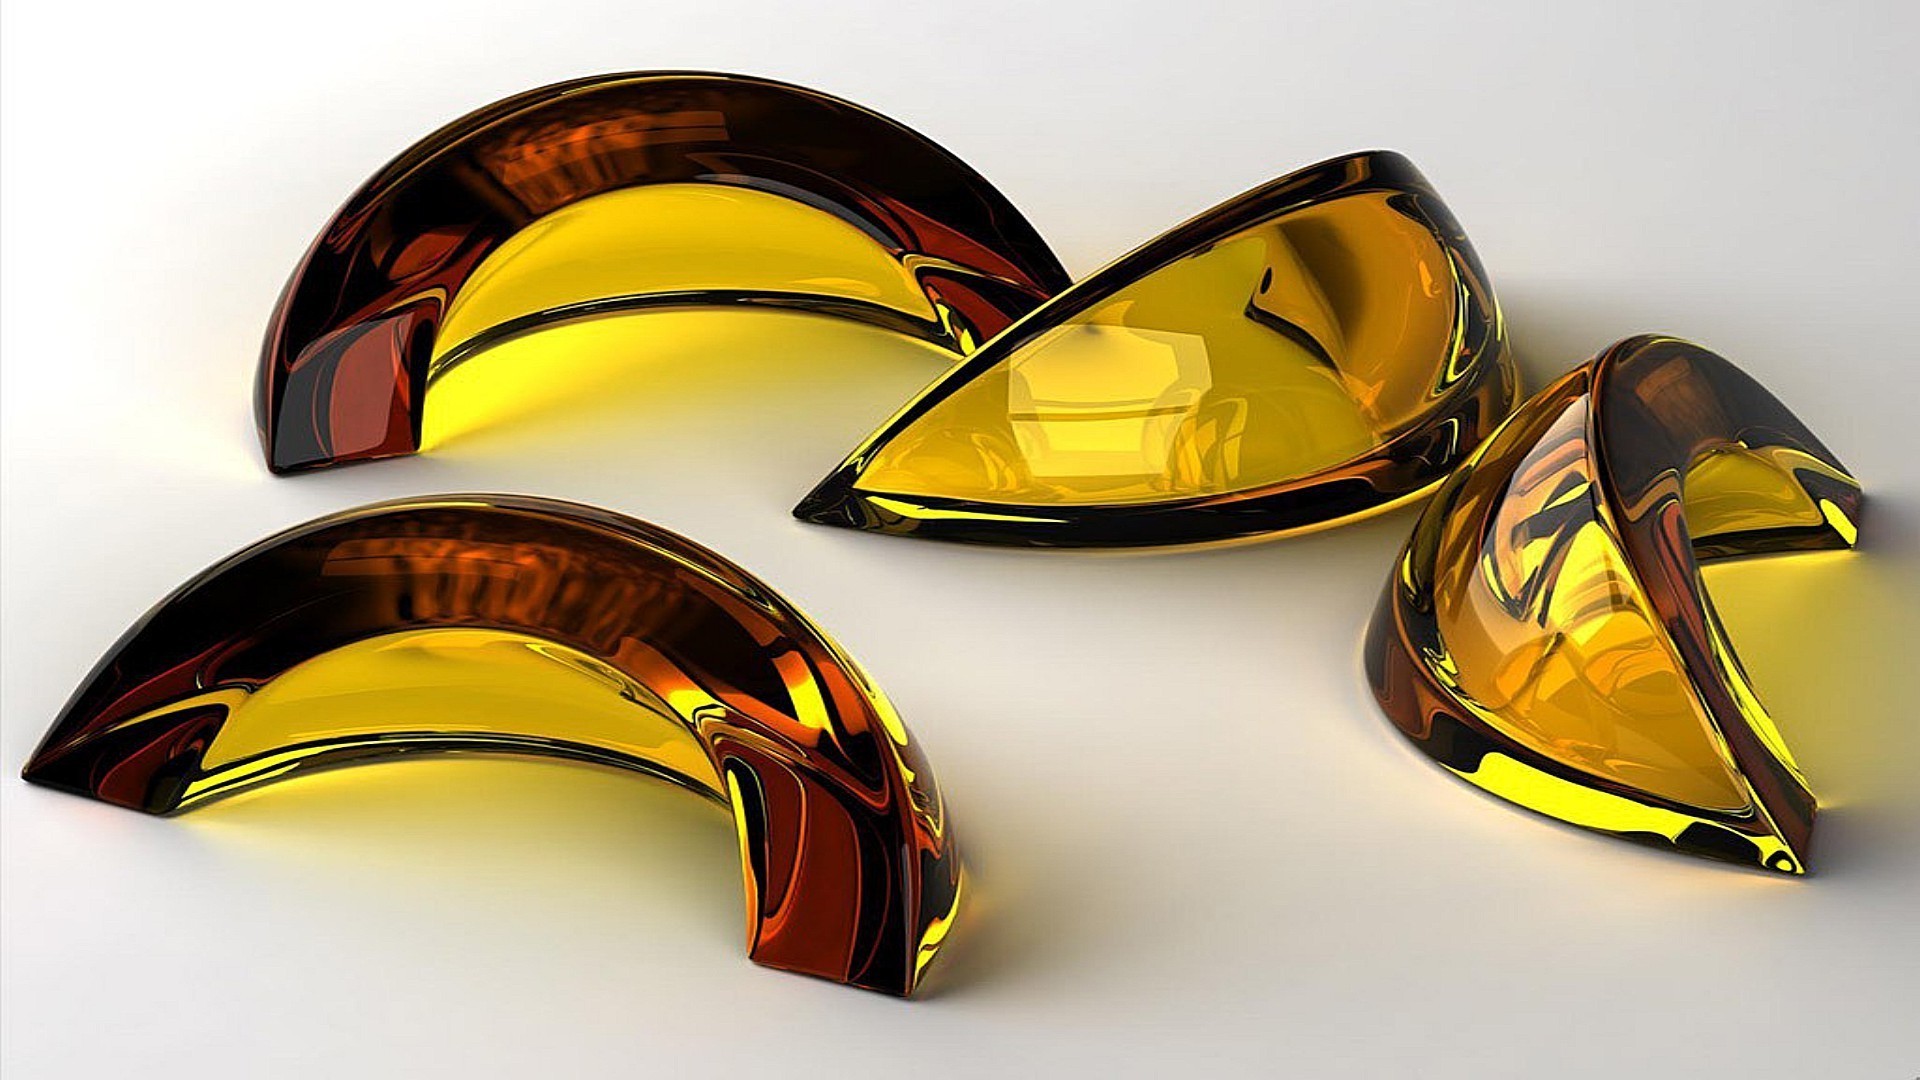 контрасты шлем цвет иллюстрация график рабочего стола безопасность золото дизайн конкурс искусство яркий изображения вуаль